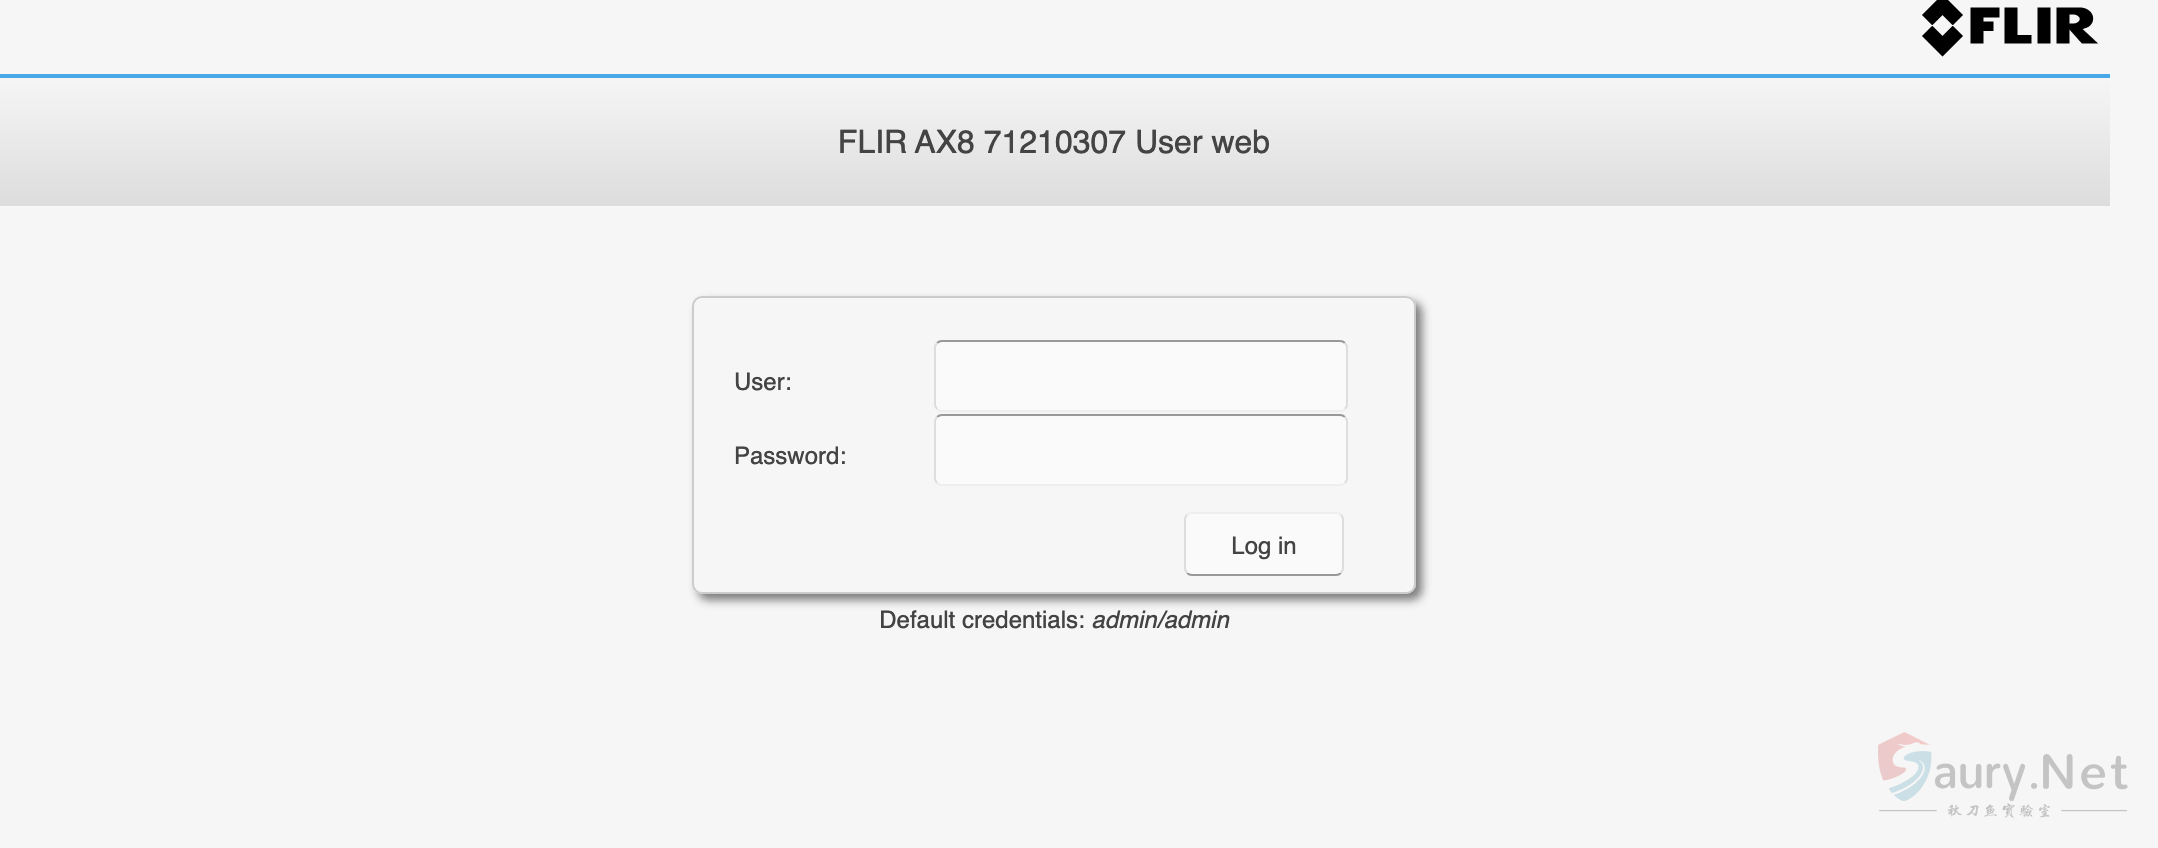 FLIR-AX8 res.php 后台命令执行漏洞-秋刀鱼实验室